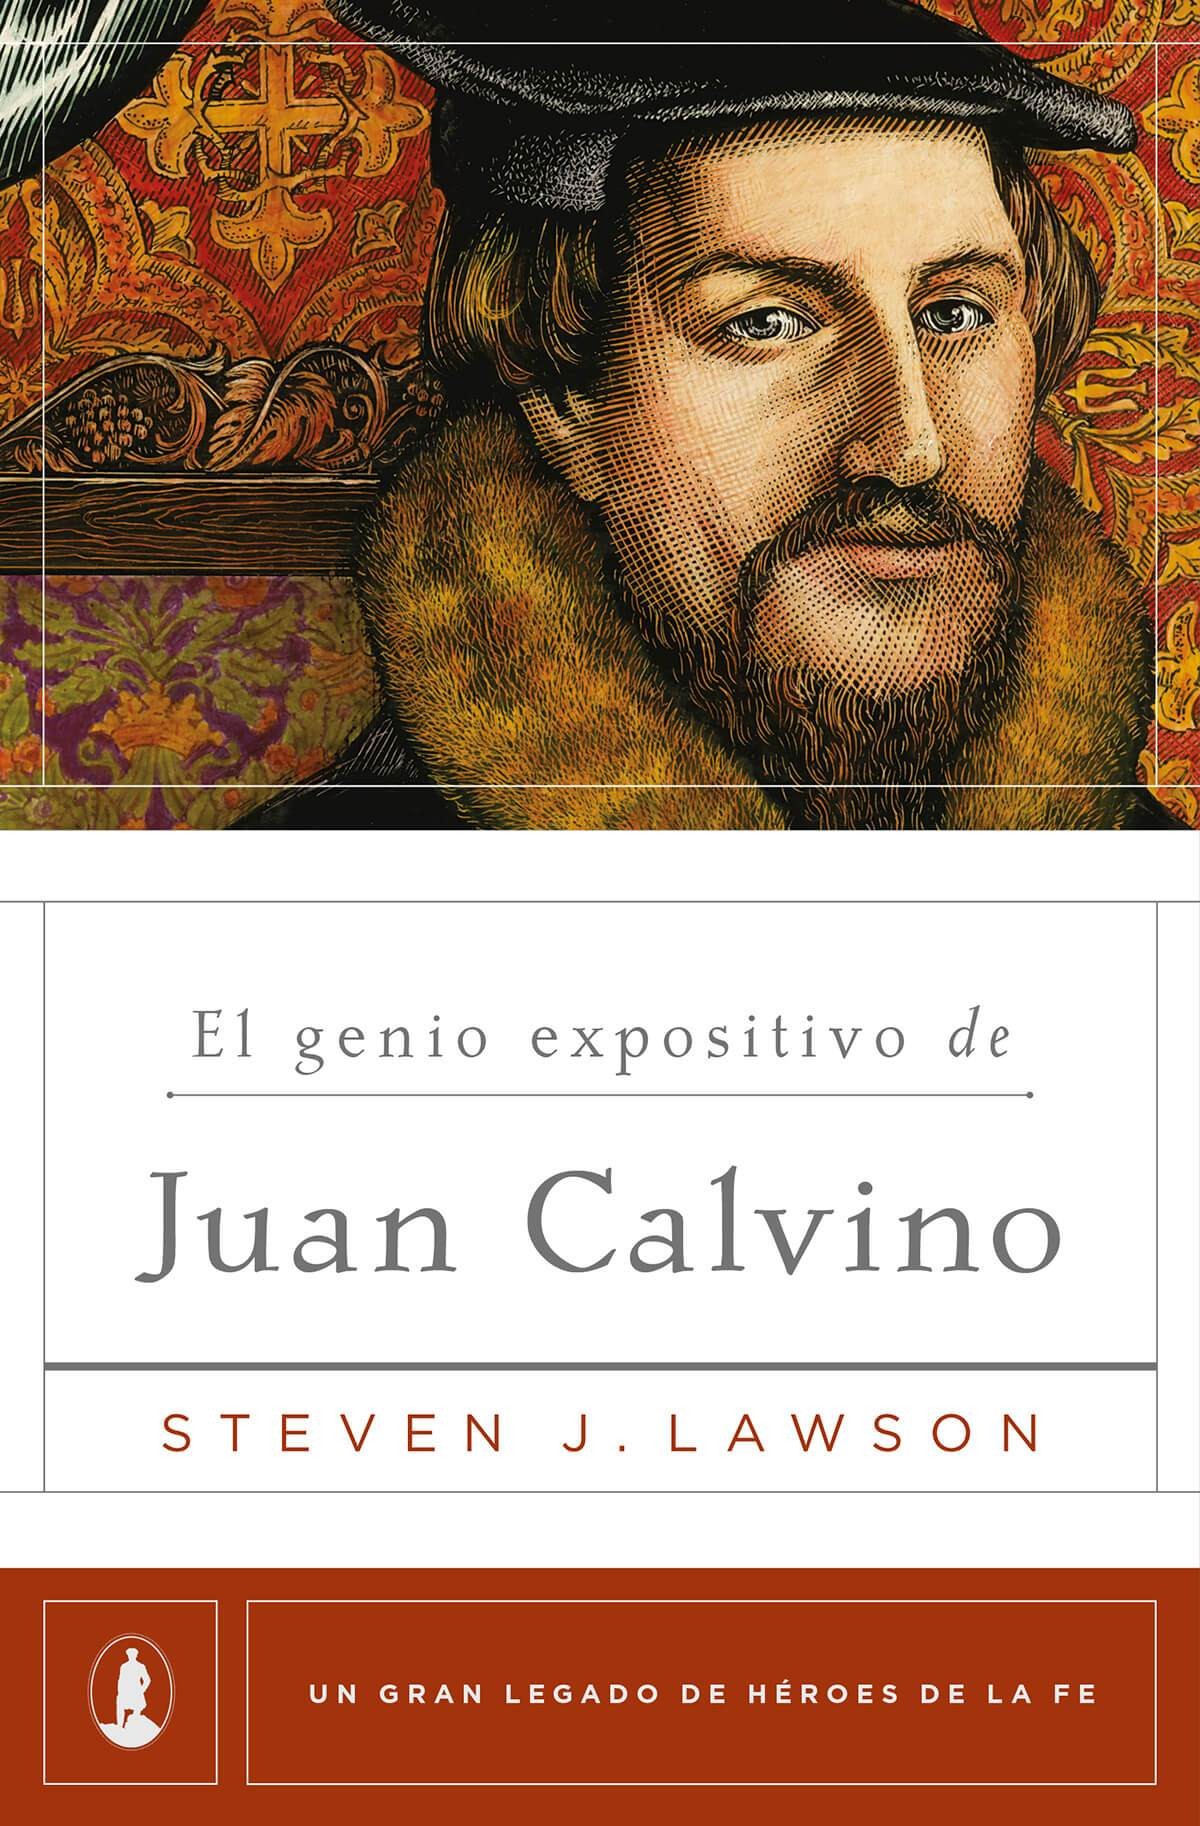 Genio expositivo de Juan Calvino, El